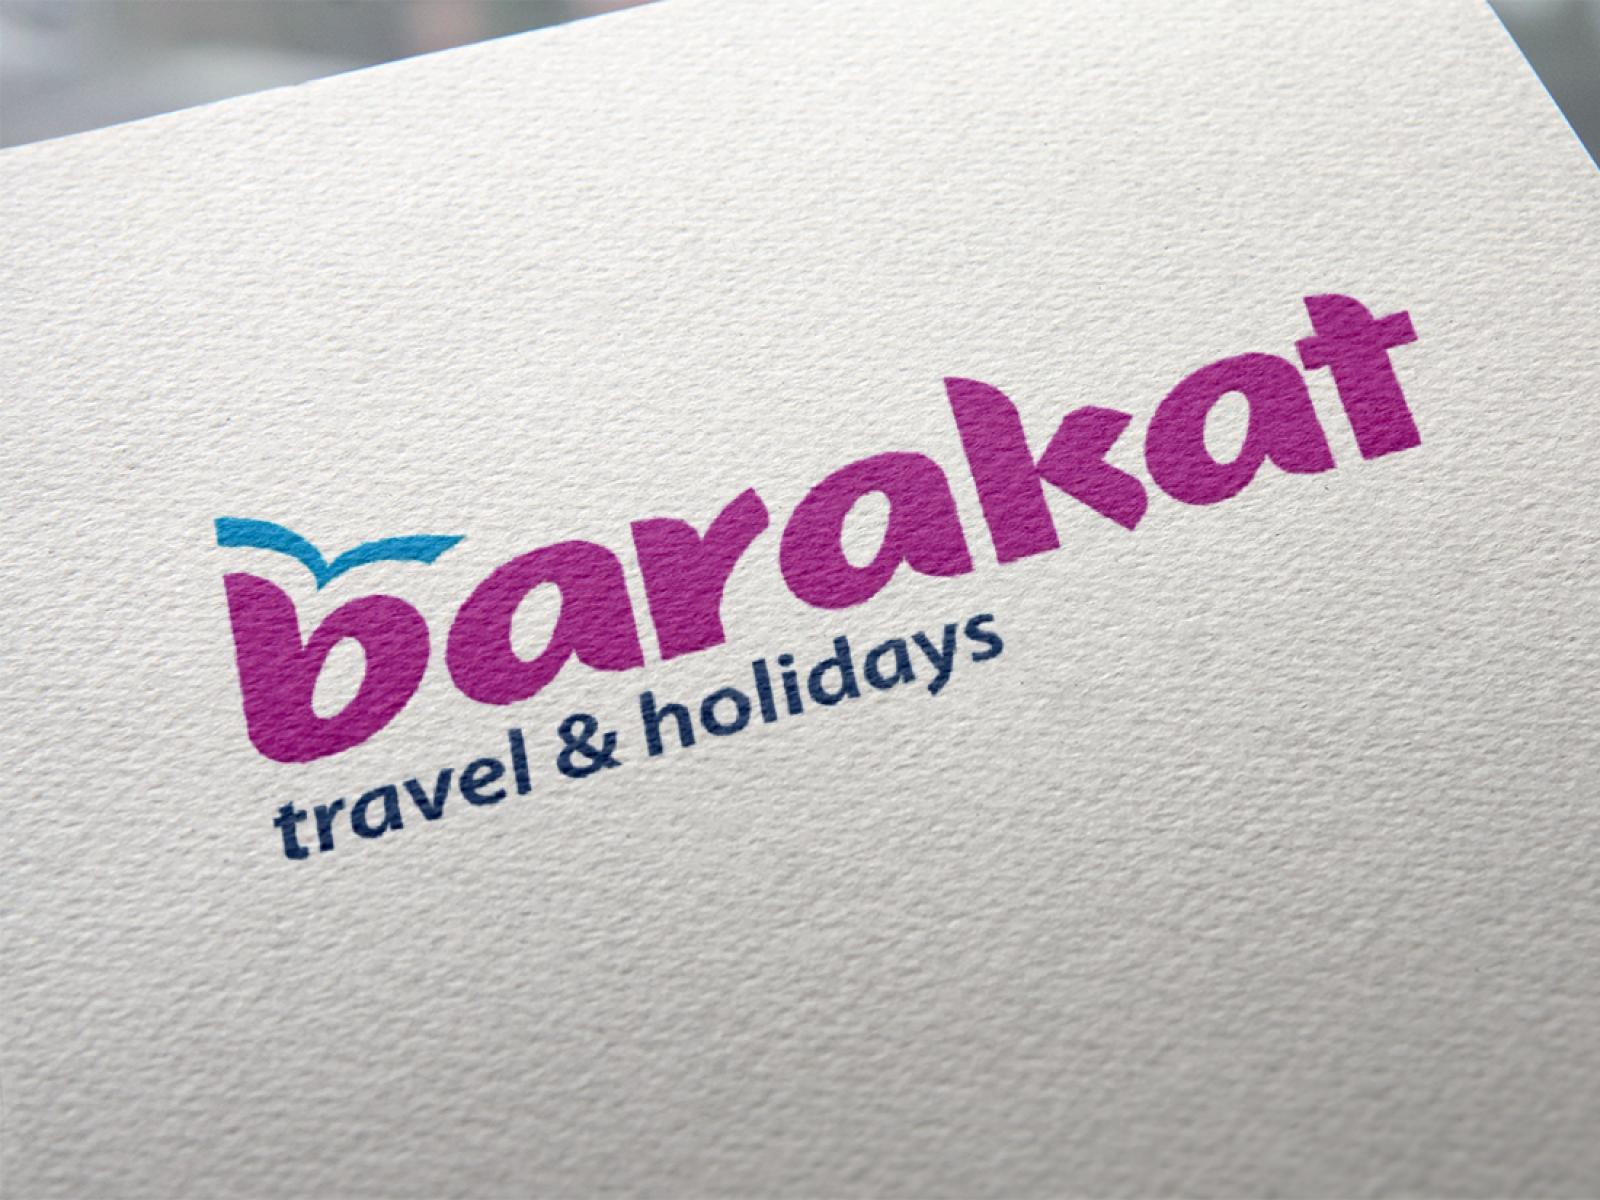 barakat travel careers